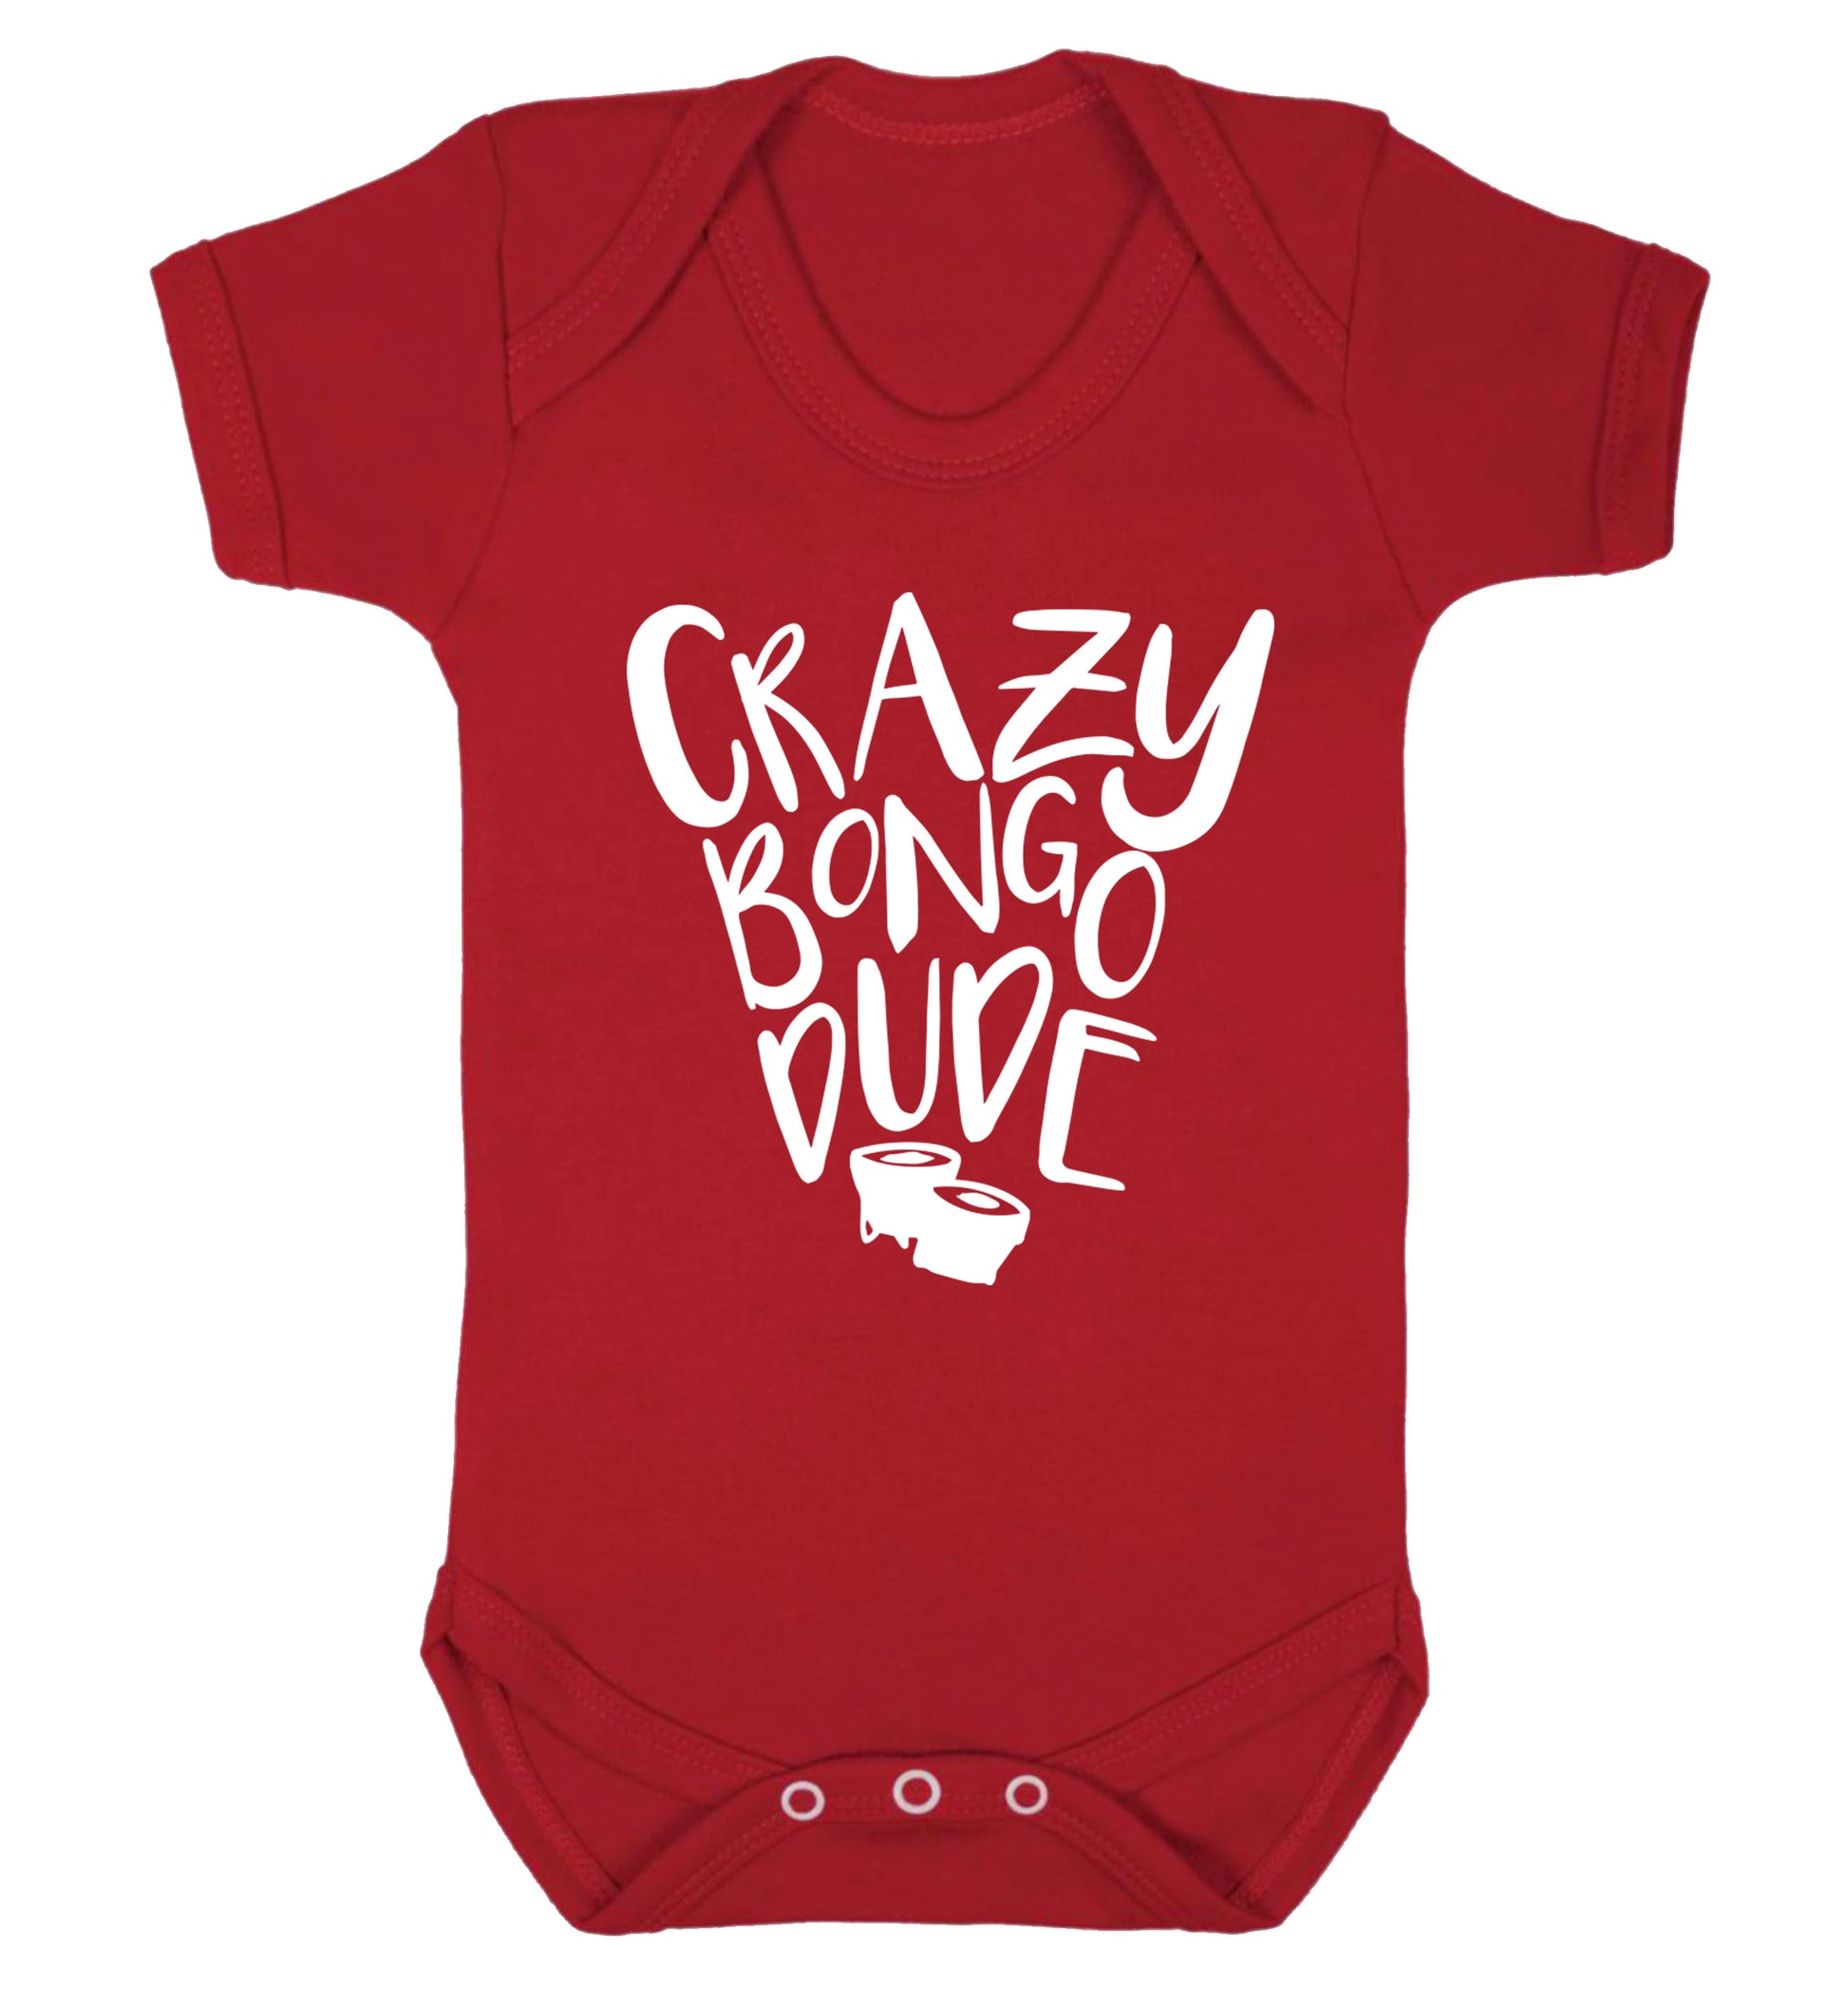 Crazy bongo dude Baby Vest red 18-24 months